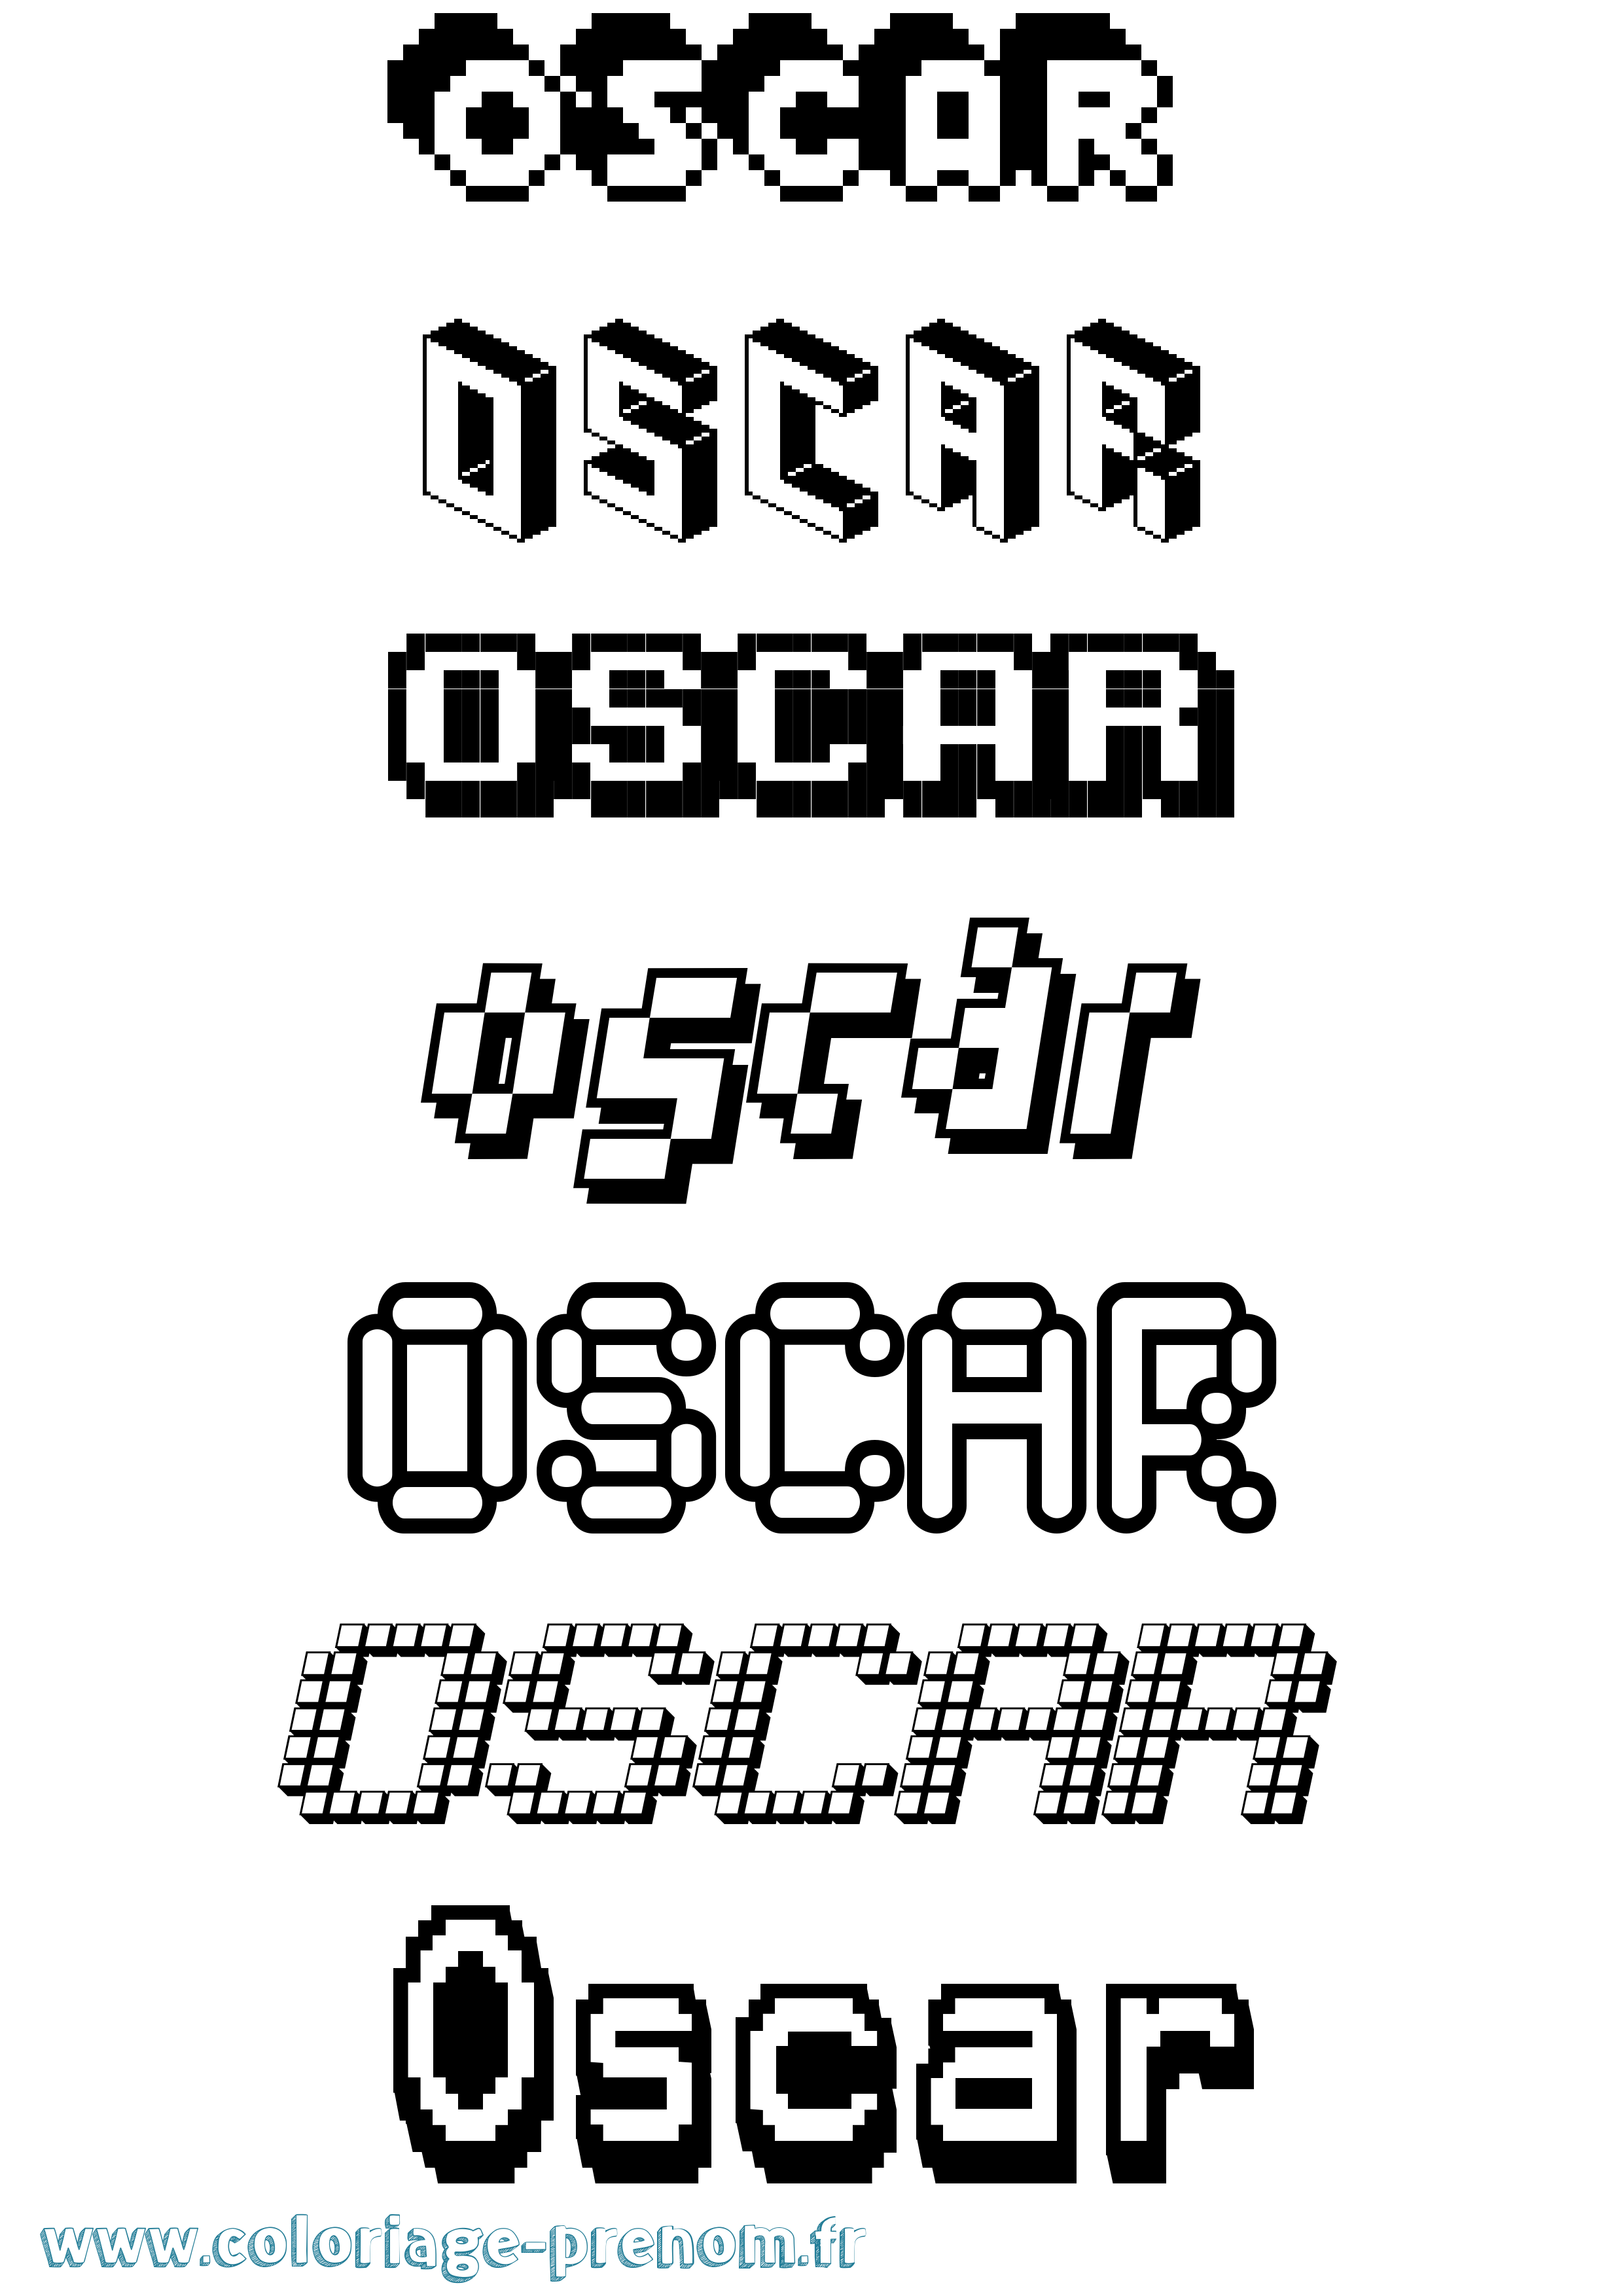 Coloriage prénom Oscar Pixel